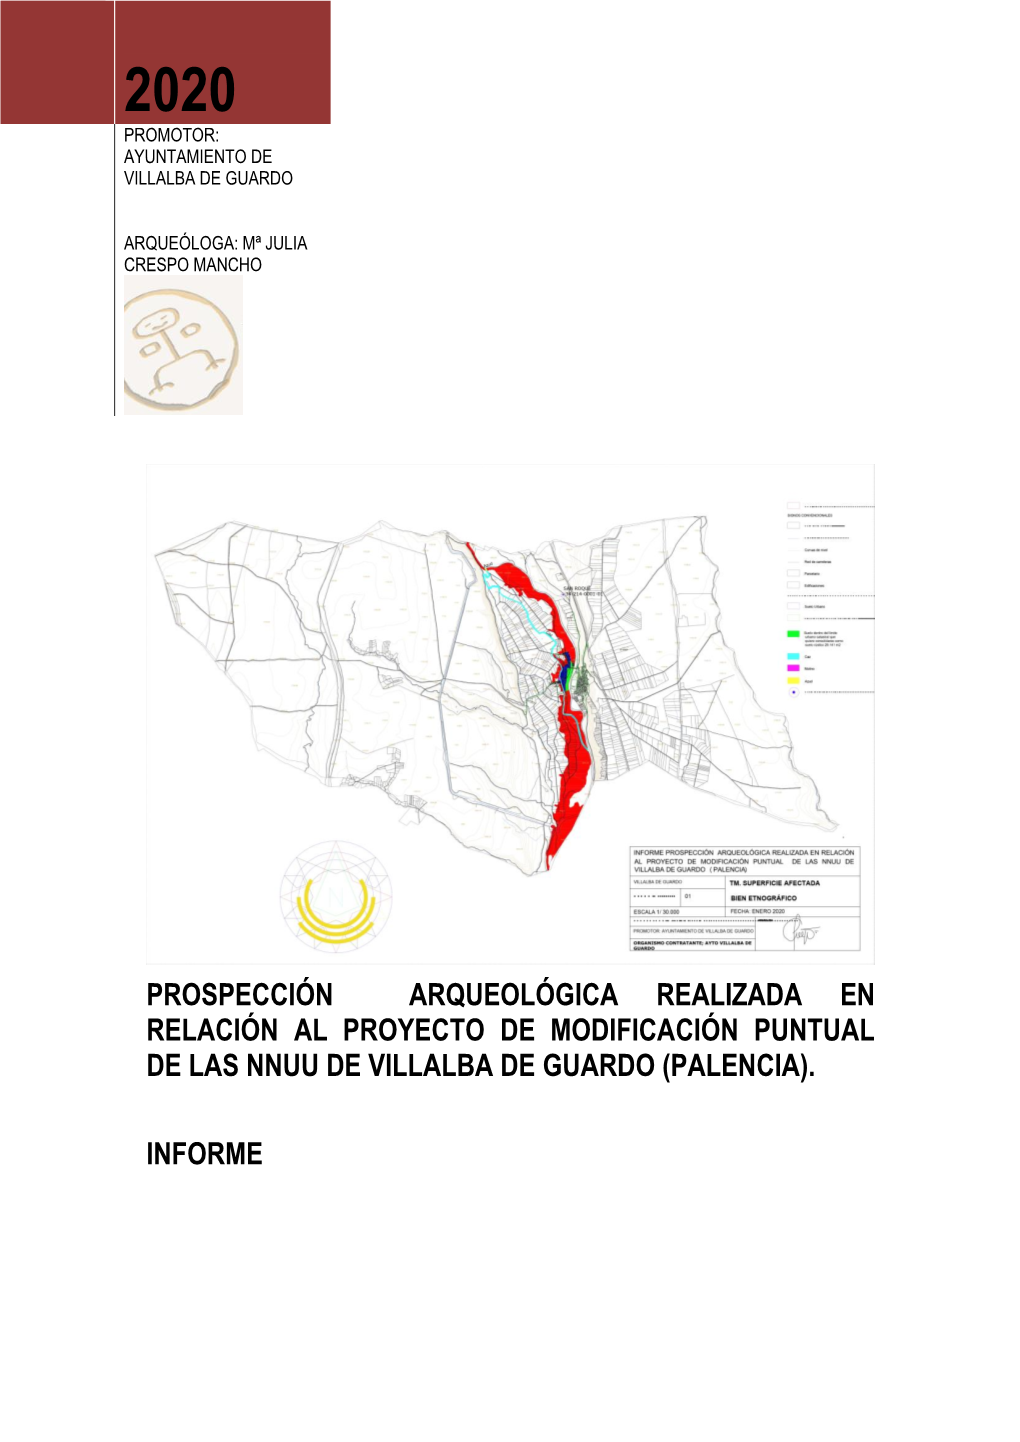 Prospección Arqueológica Realizada En Relación Al Proyecto De Modificación Puntual De Las Nnuu De Villalba De Guardo (Palencia)